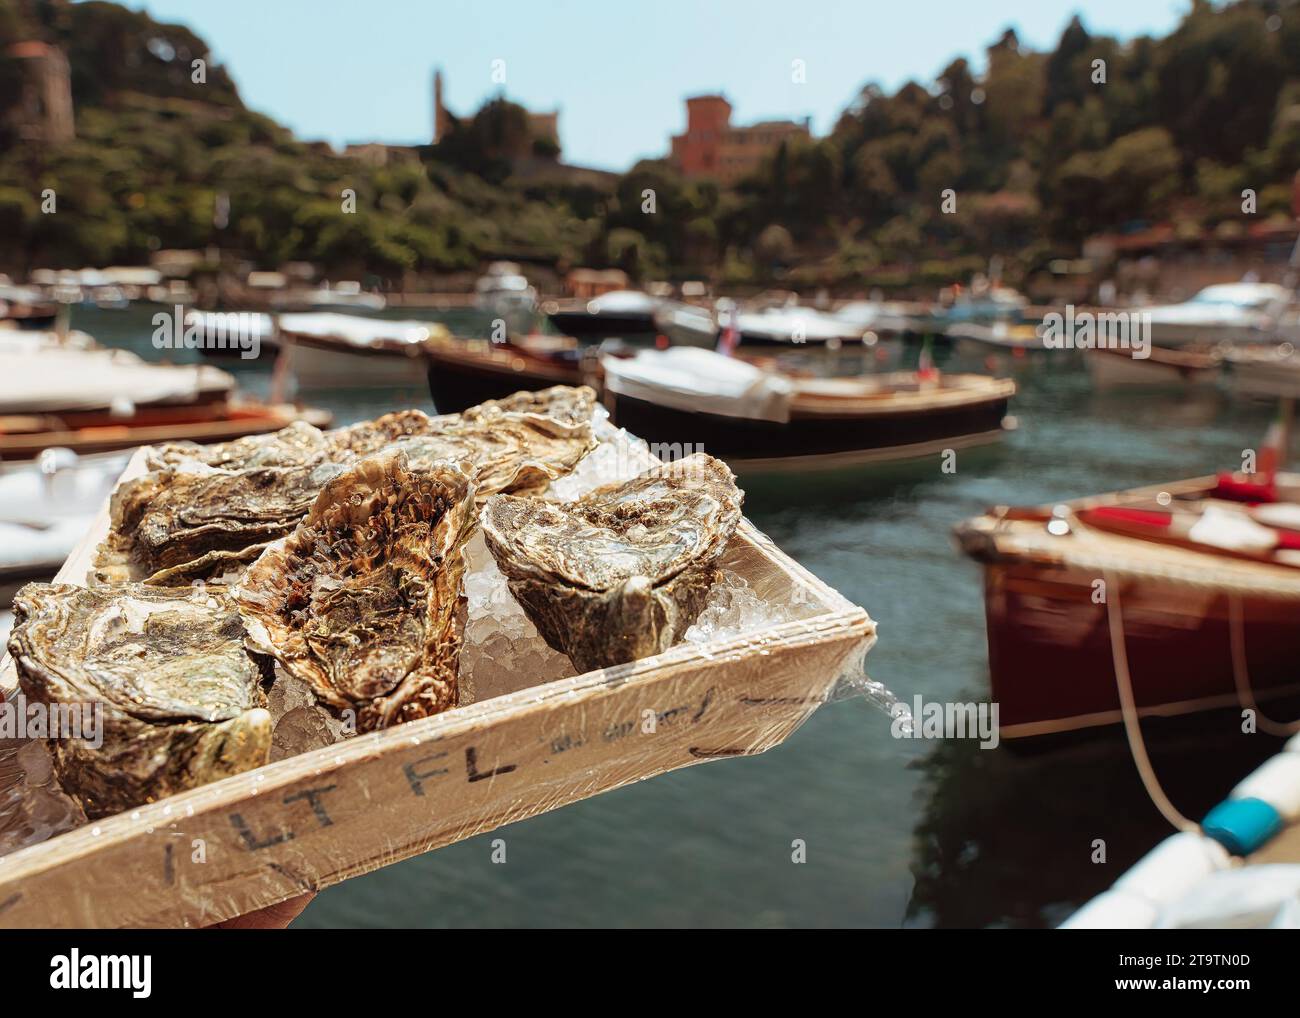 Portofino, dove ogni piatto è una sinfonia di sapori mediterranei. Ho apprezzato il mio palato con cibo fresco, pesto aromatico e olio d'oliva locale. Foto Stock